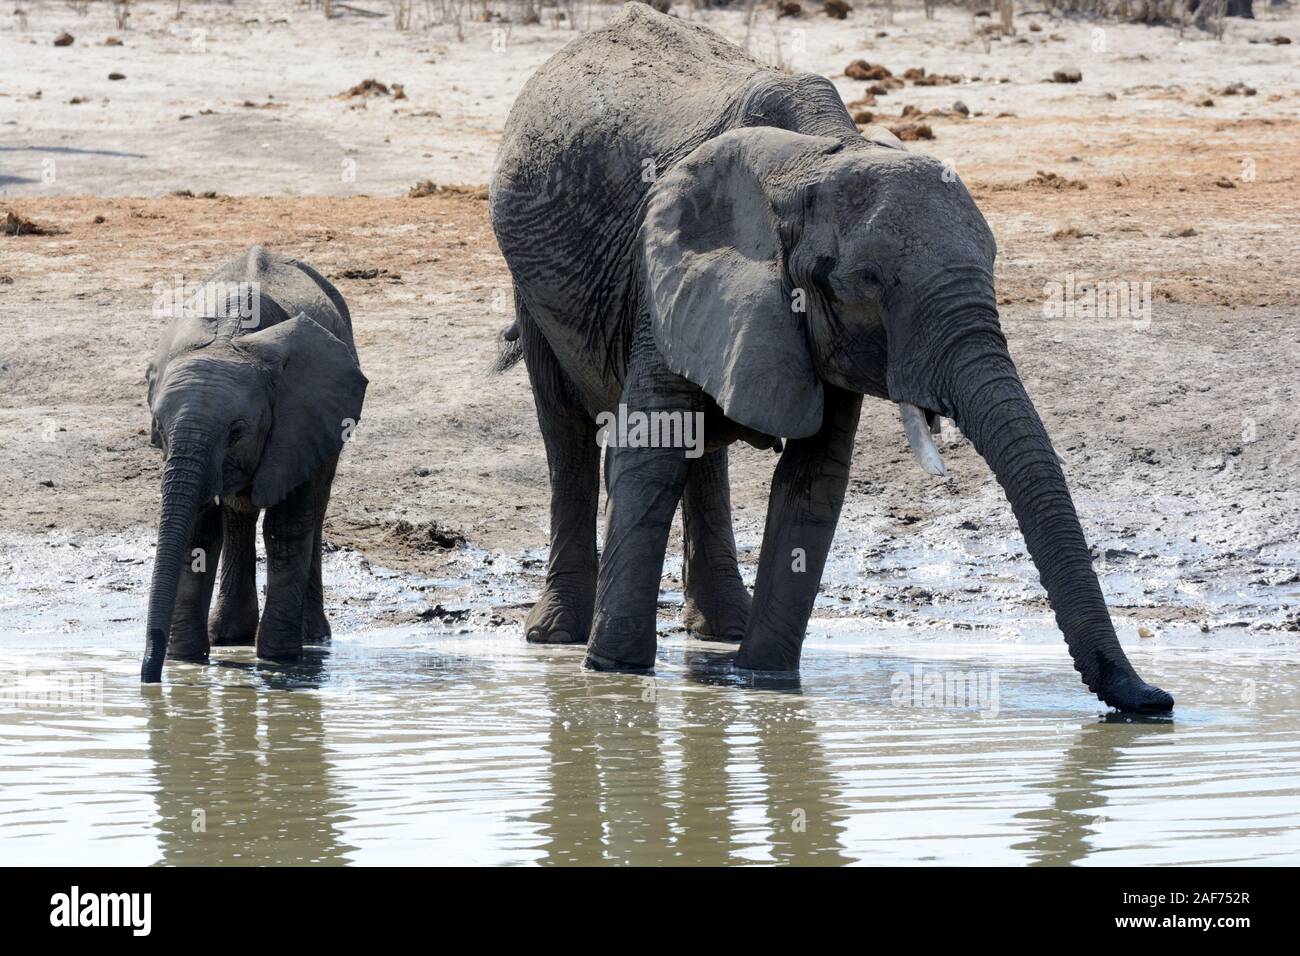 Mère et bébé éléphant de l'eau potable pendant une saison sèche Afrique Botswana Moremi National Park Banque D'Images